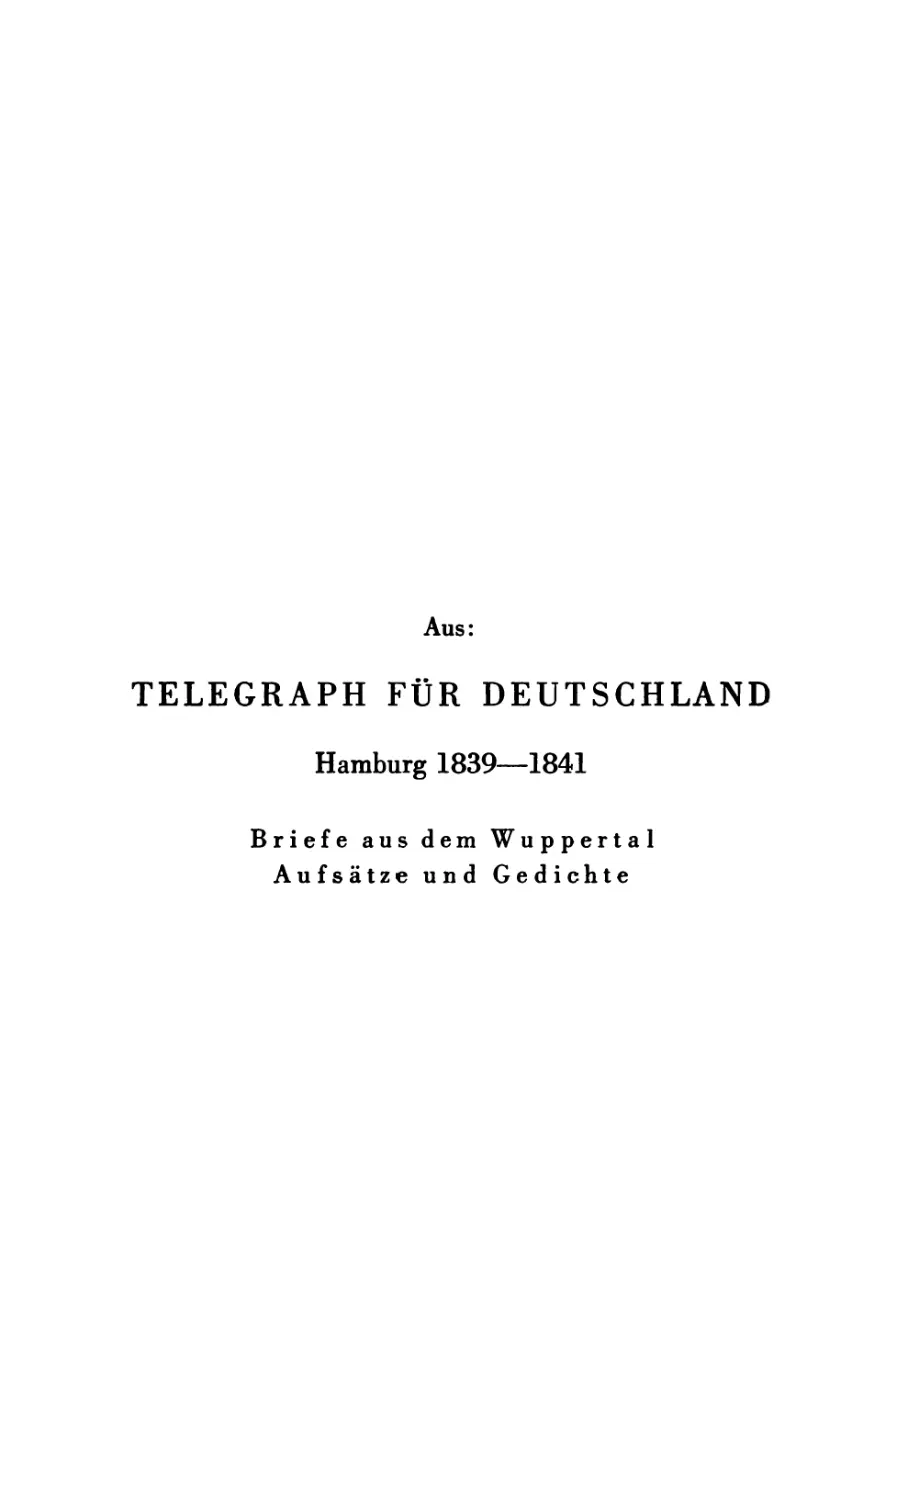 Aus: Telegraph für Deutschland. 1839—1841